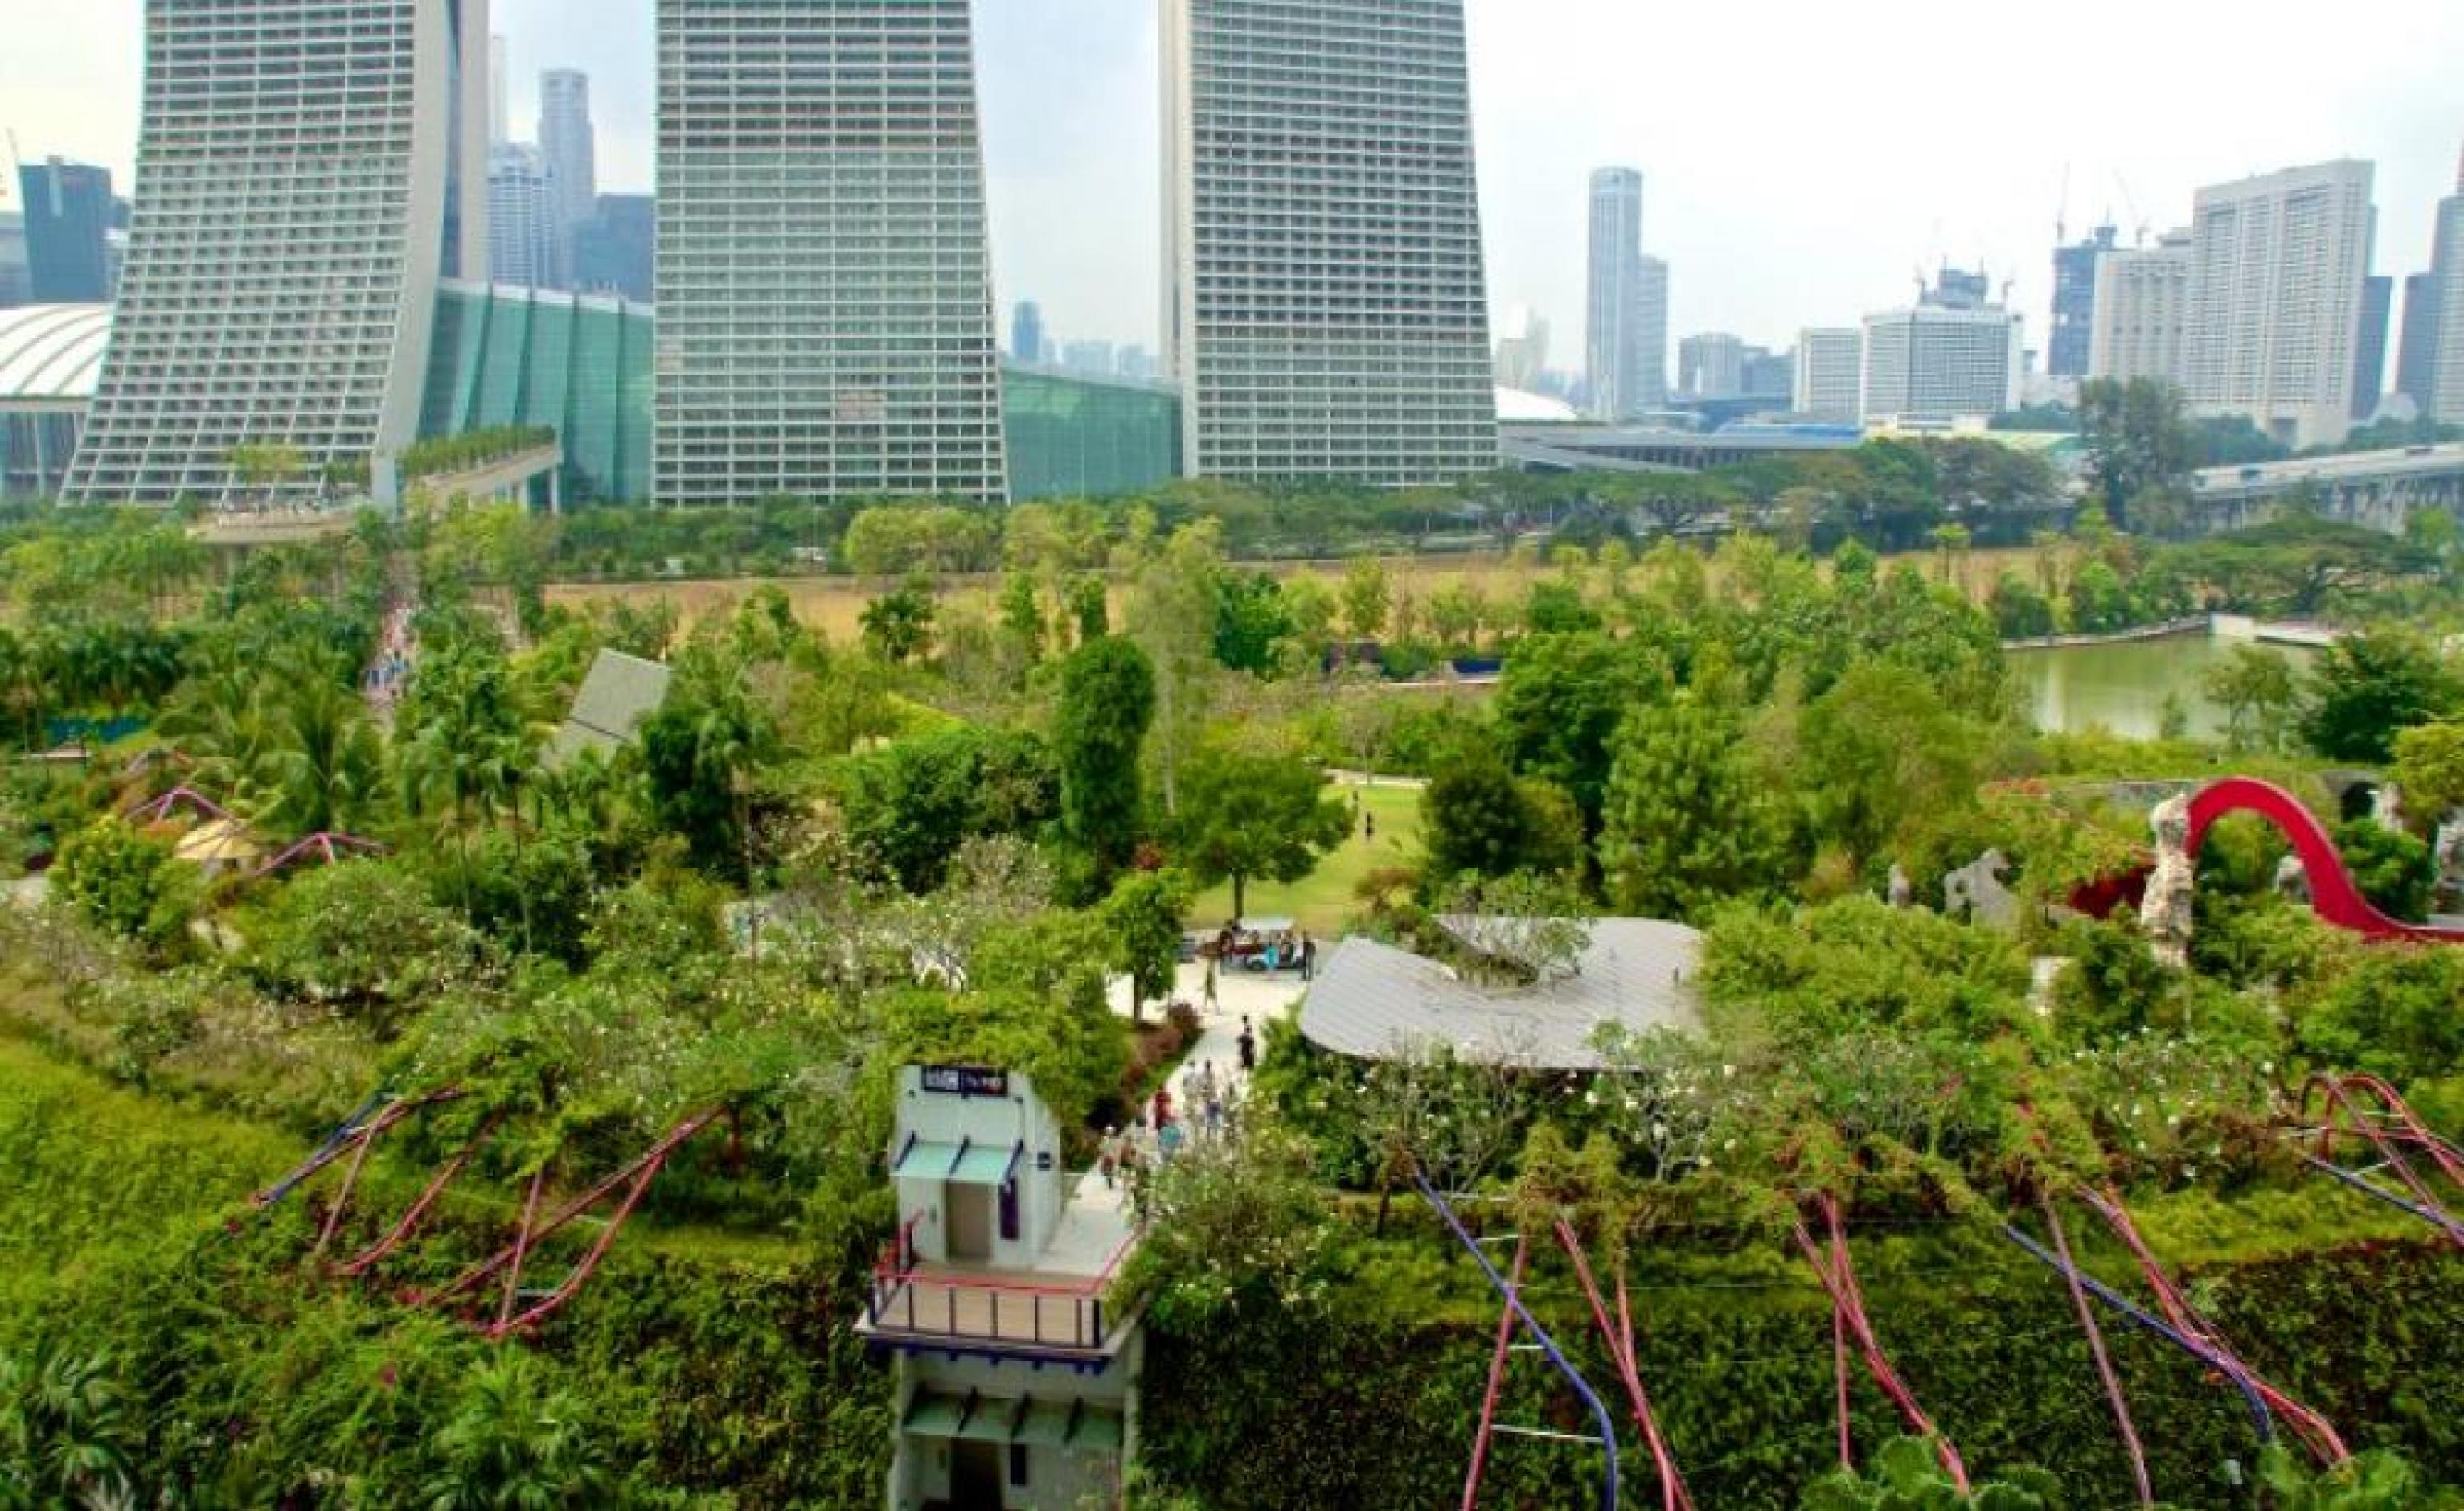 Aufnahme einer großen Gartenlandschaft aus der Luft. Im Hintergrund lässt sich eine Großstadt mit Hochhäusern erkennen.